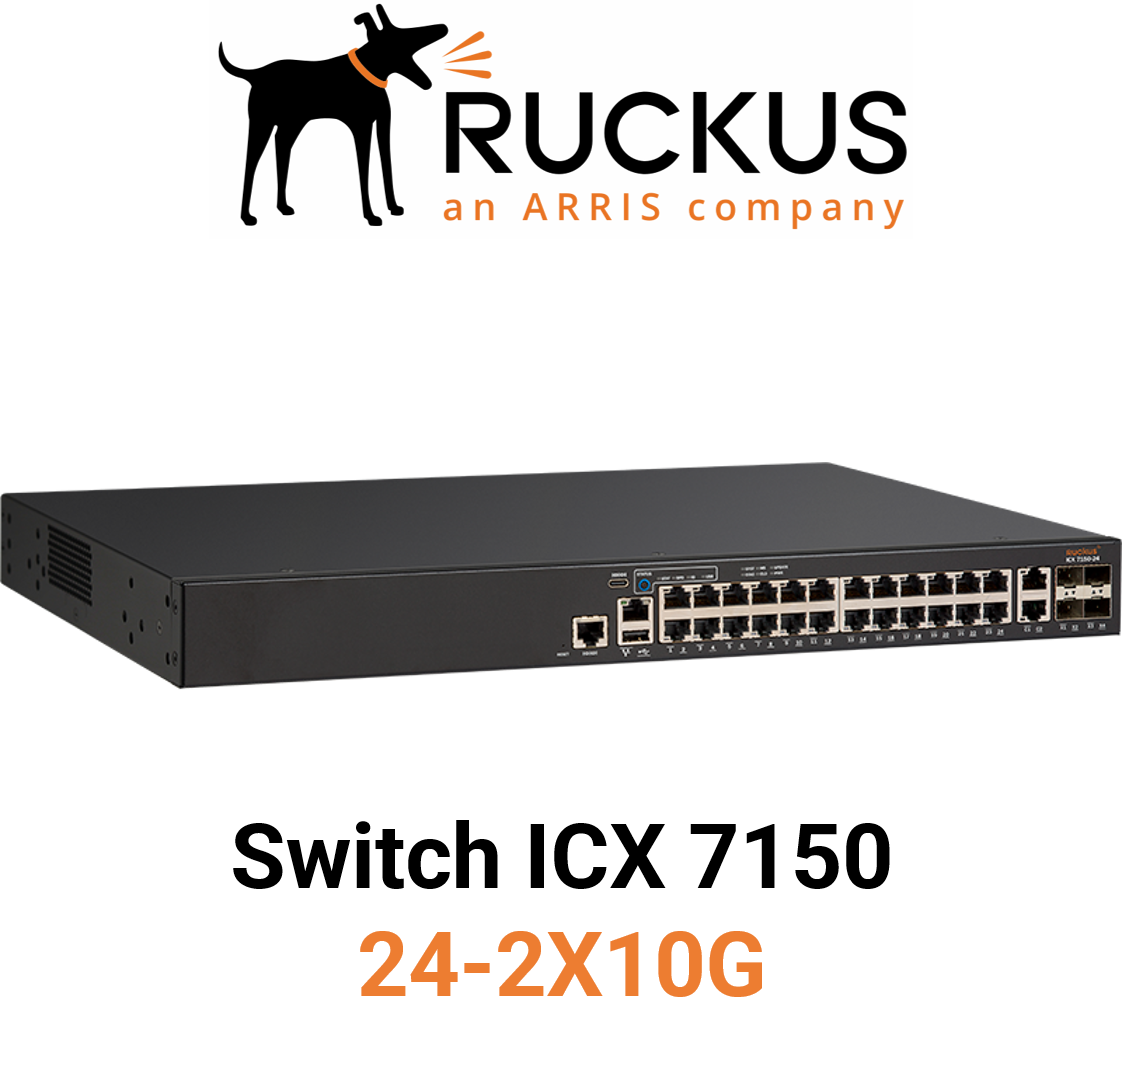 Ruckus ICX7150-24-2X10G Switch